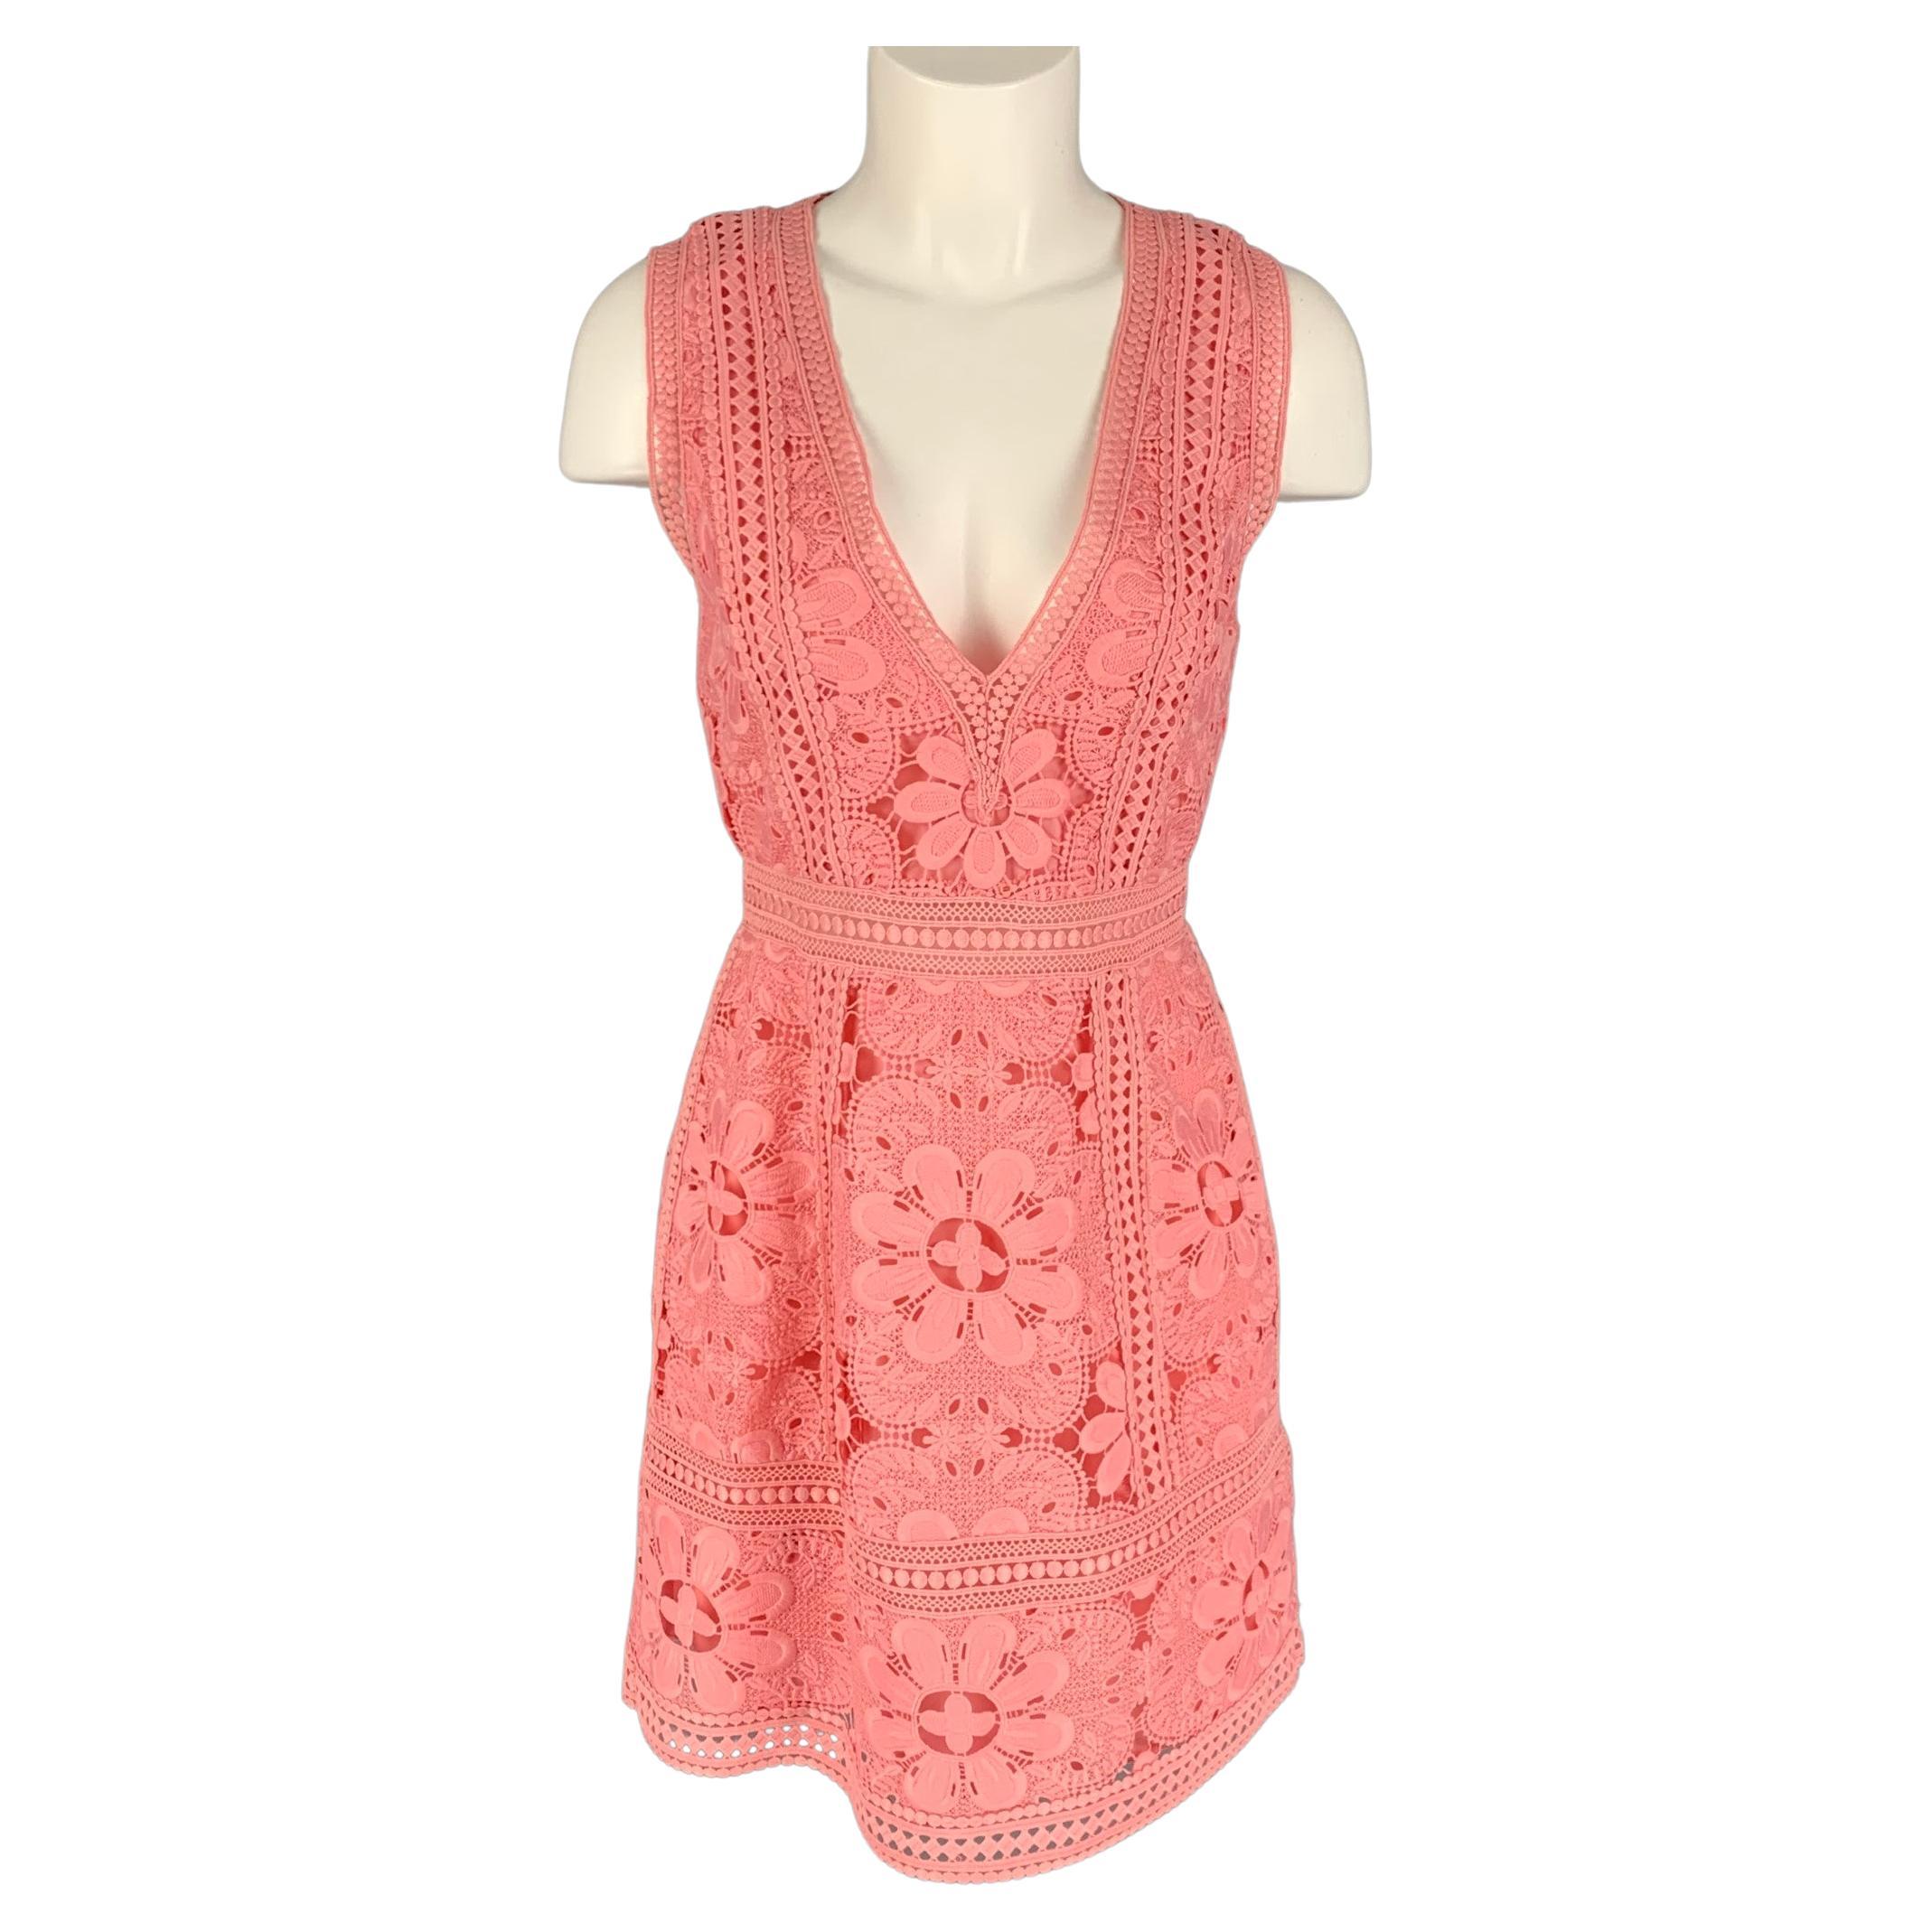 ALICE + OLIVIA Size 6 Rose Polyester Lace A-Line Dress